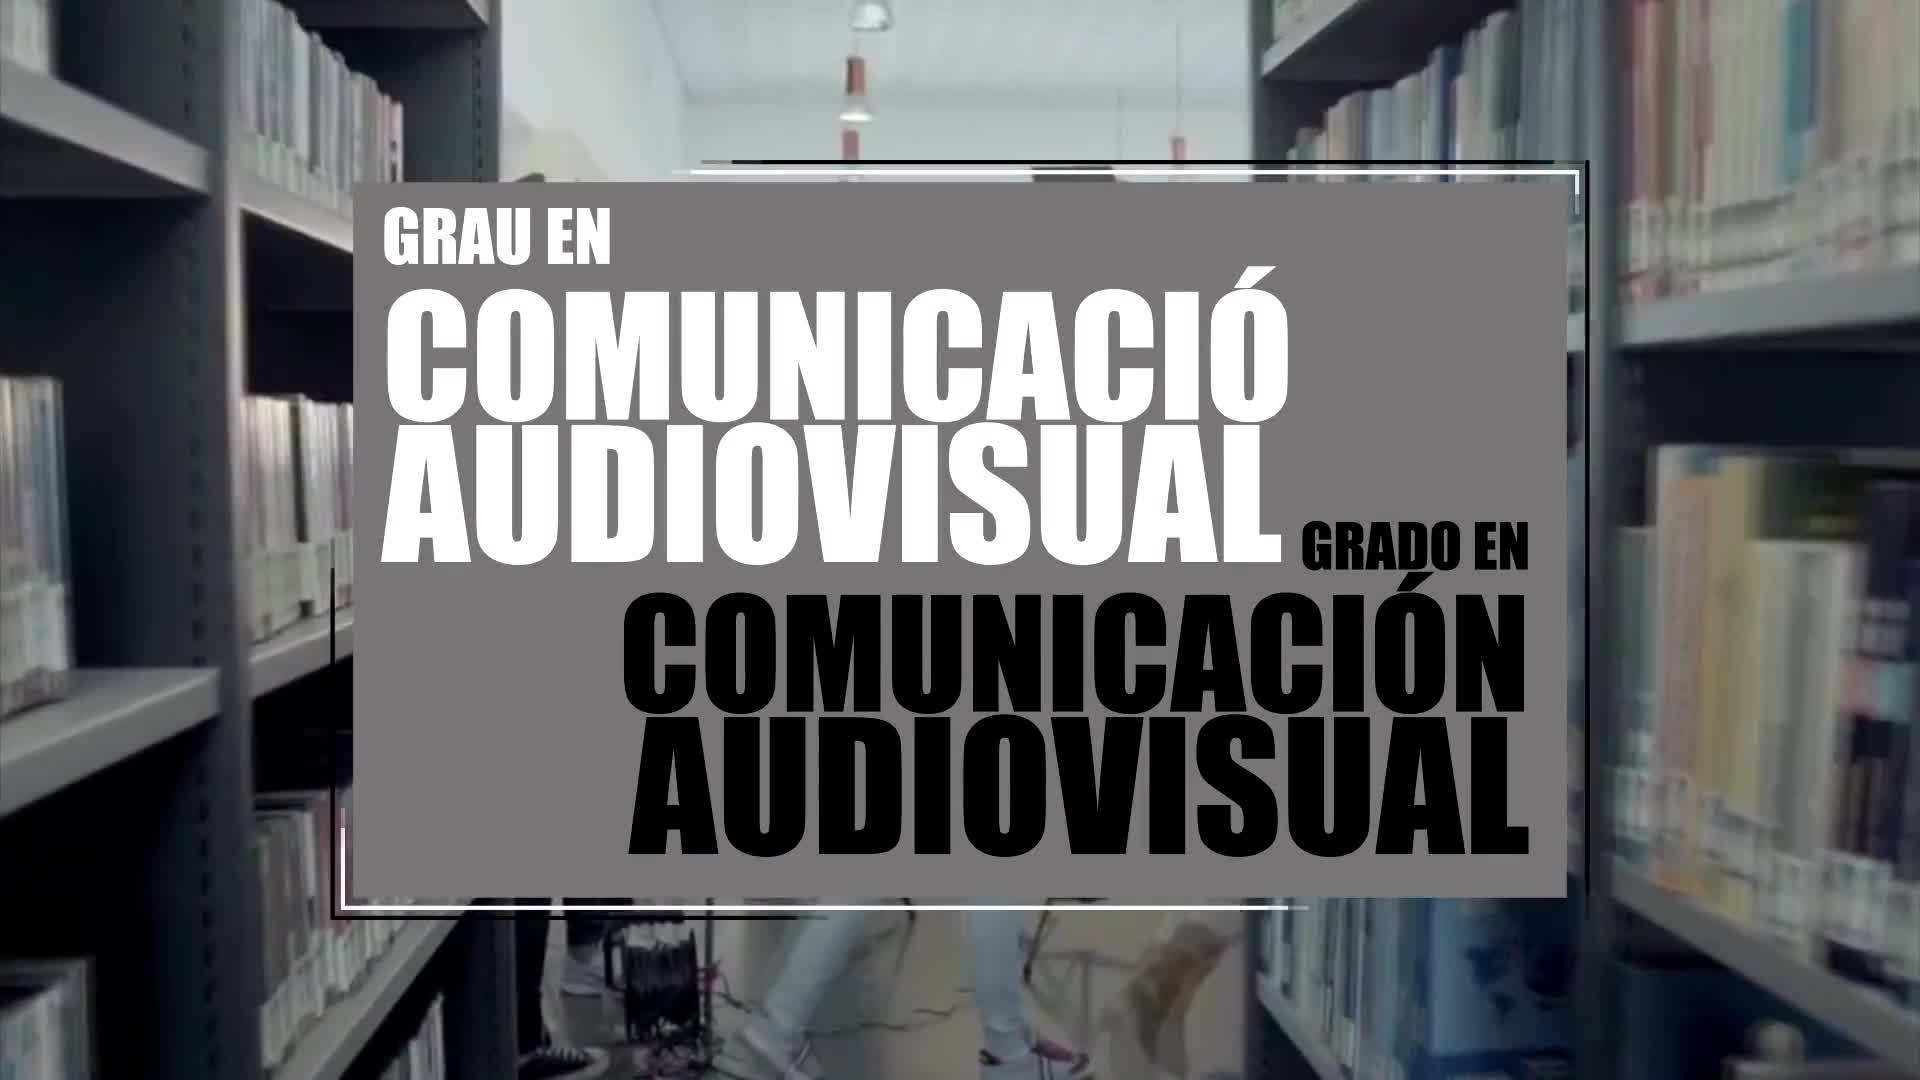 22-04-2020 Grado en Comunicación Audiovisual (Gandia)